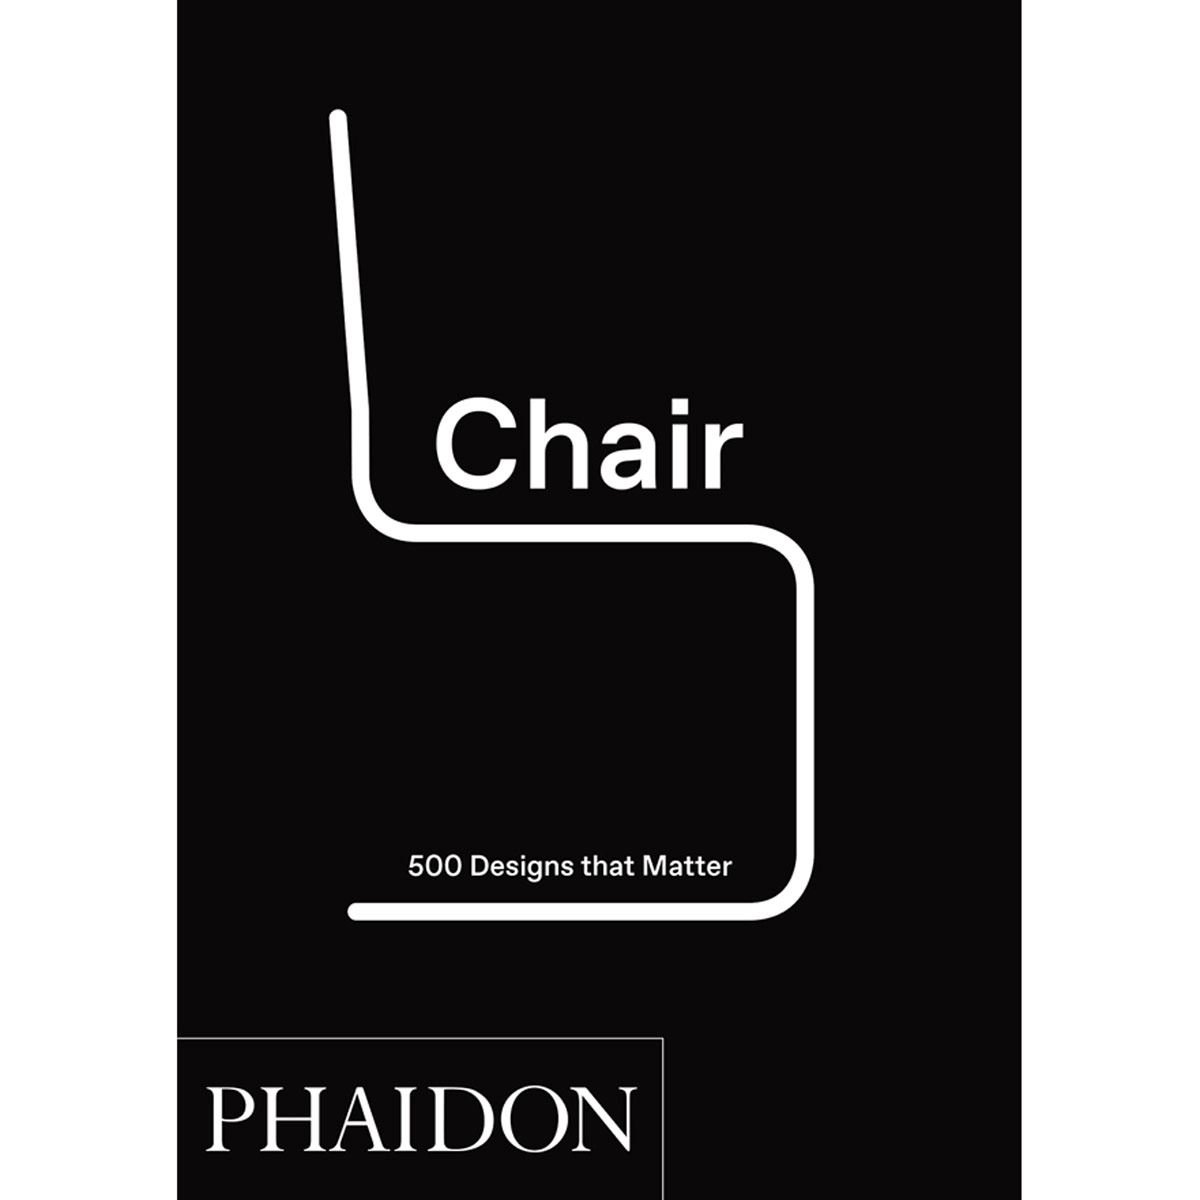 Chair. 500 Designs that Matter